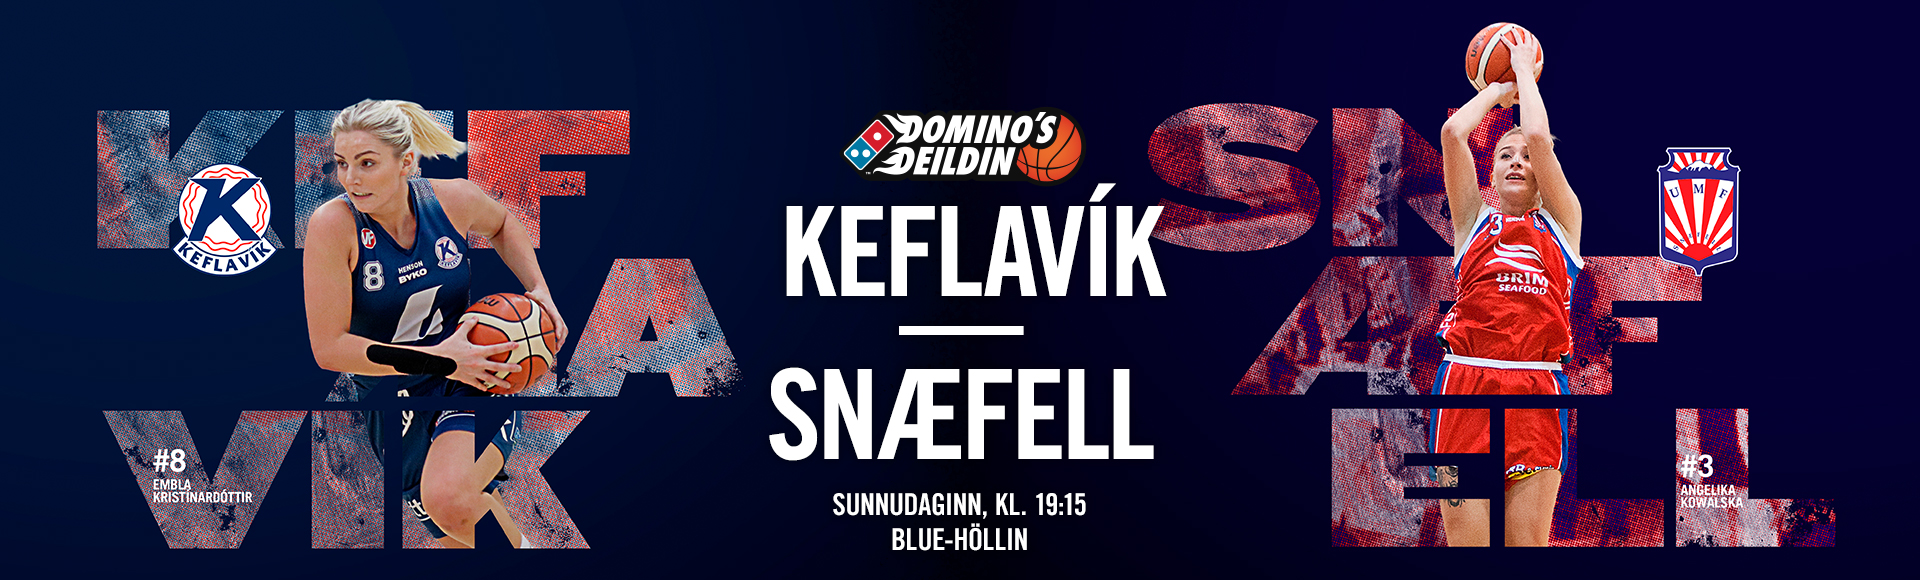 Domino's deild kvenna í kvöld · Keflavík-Snæfell í beinni á Stöð 2 Sport